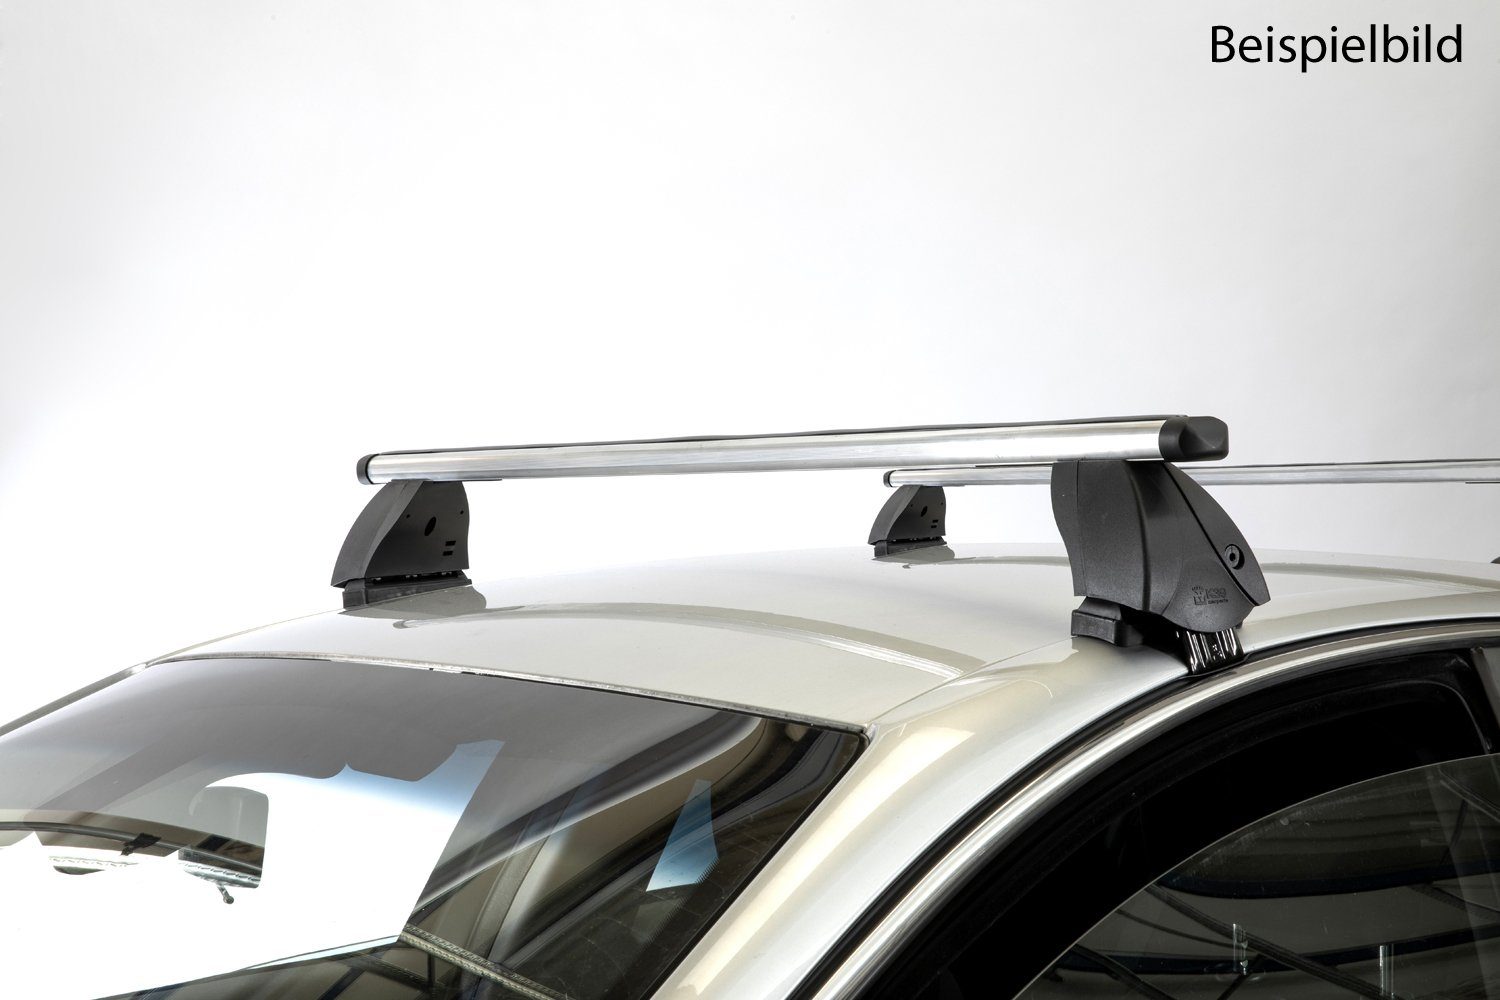 VDP Dachträger (Passend für Ihren Audi S3 Sportback (5Türer) ab 13), Dachträger K1 PRO Aluminium kompatibel mit Audi S3 Sportback (5Türer) ab 13